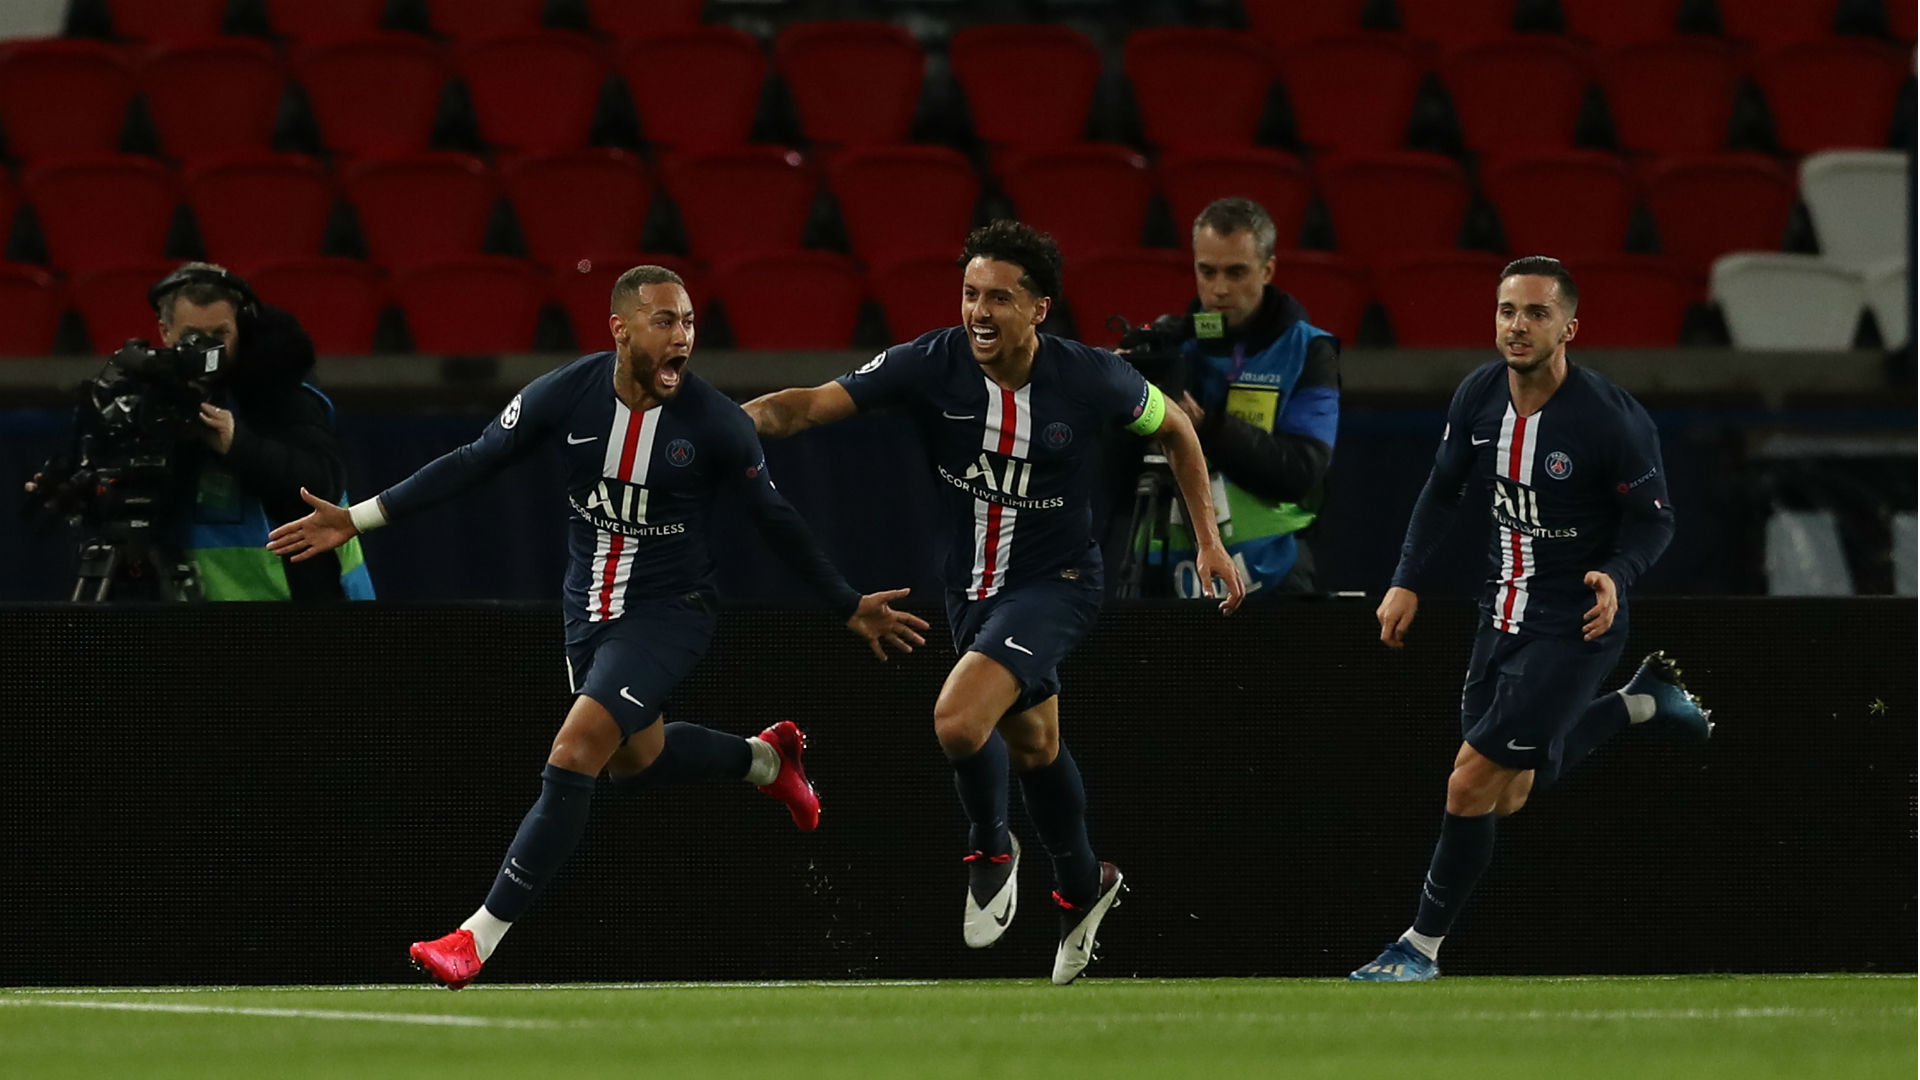 Paris Saint-Germain 2-0 Borussia Dortmund (3-2 agg): Neymar helps book QF spot at empty Parc des Princes